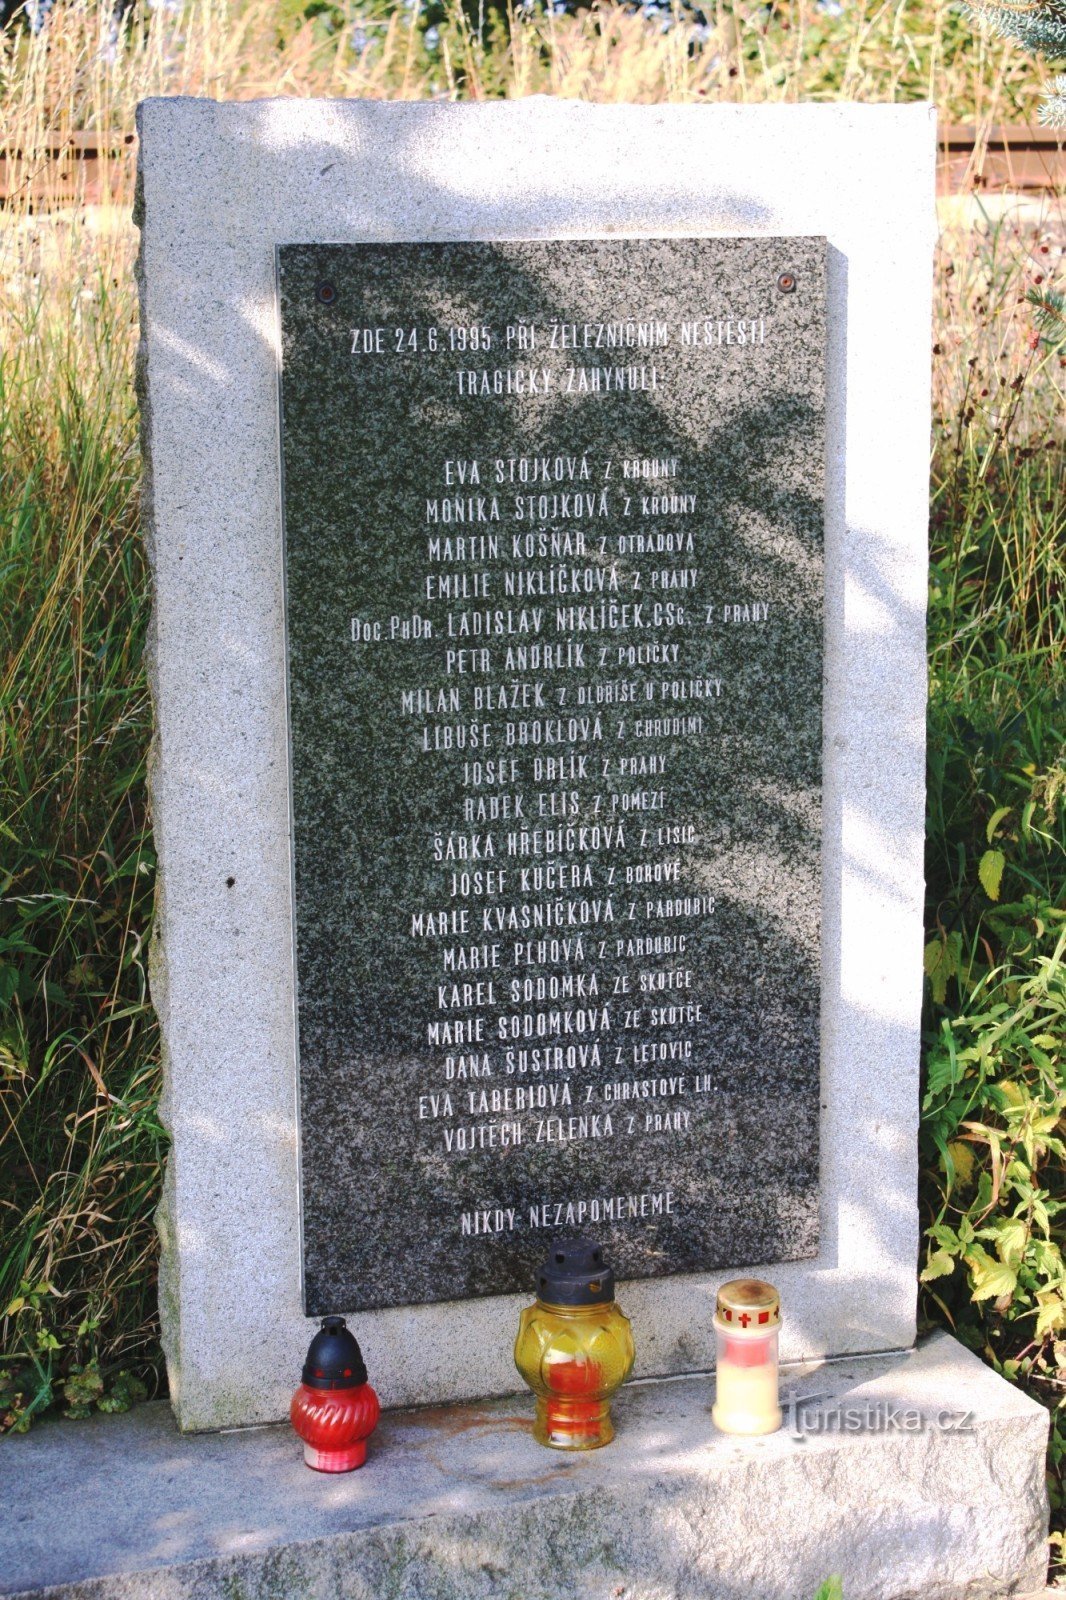 Placa memorial com lista de vítimas